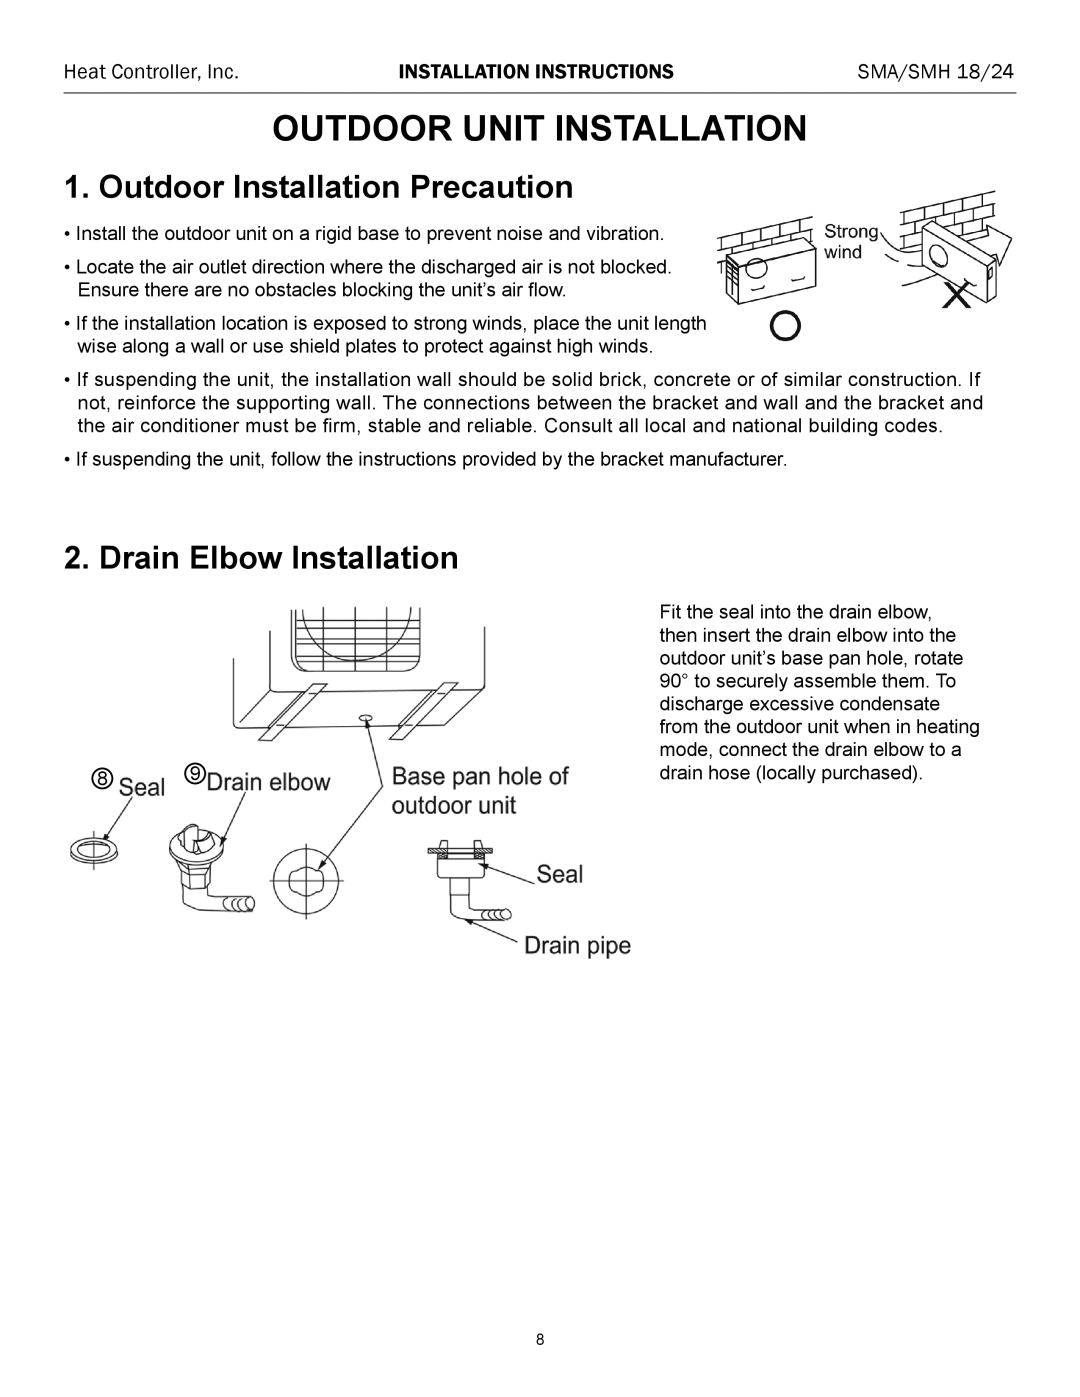 Heat Controller SMA/SMH 18/24 Outdoor Unit Installation, Outdoor Installation Precaution, Drain Elbow Installation 